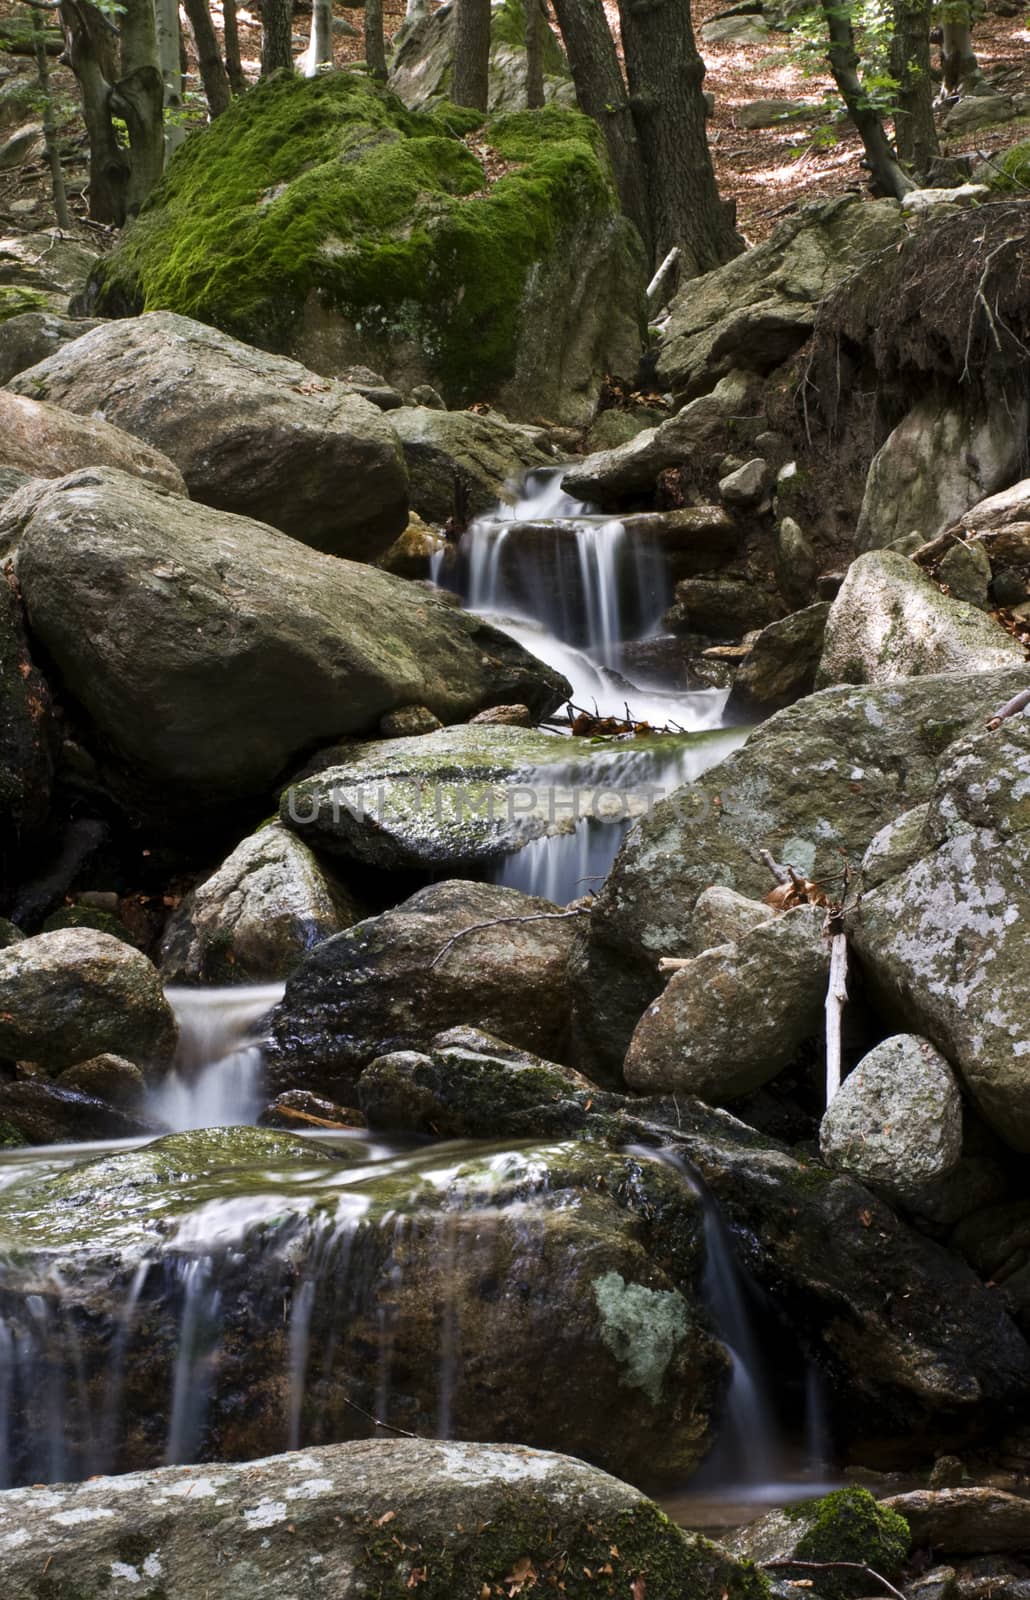 L'acqua  scende dalla piccola cascata nel bosco